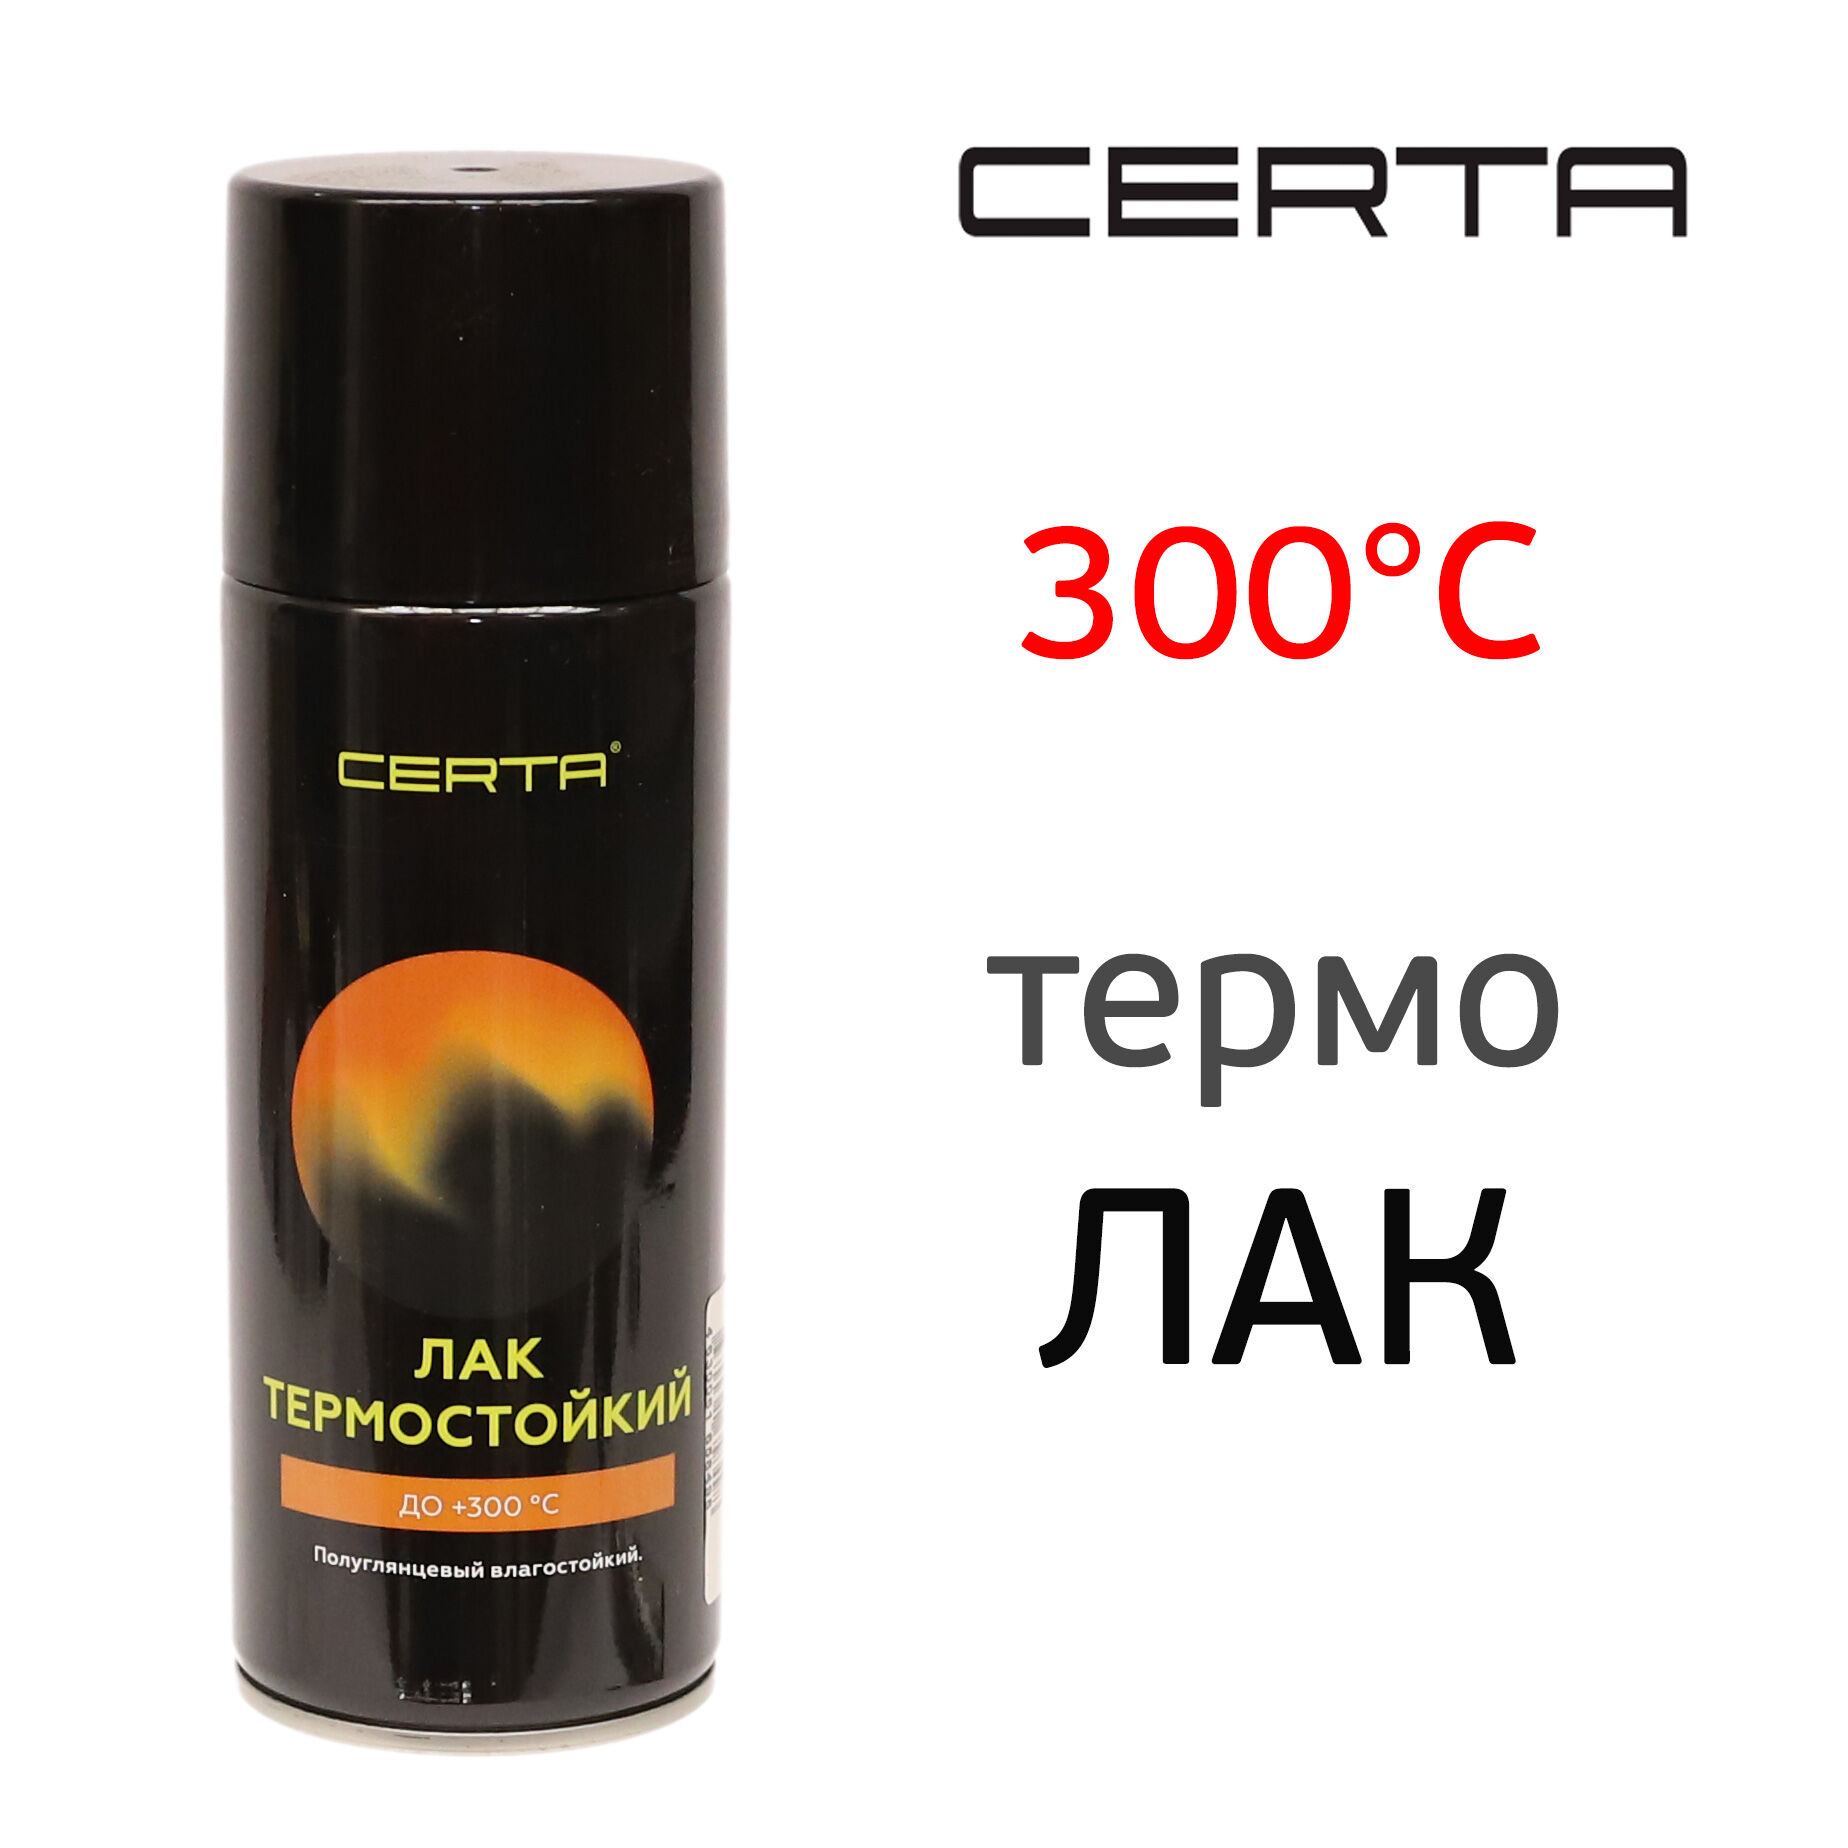 Лак термостойкий Certa 300°С (400мл) спрей полуглянцевый влагостойкий